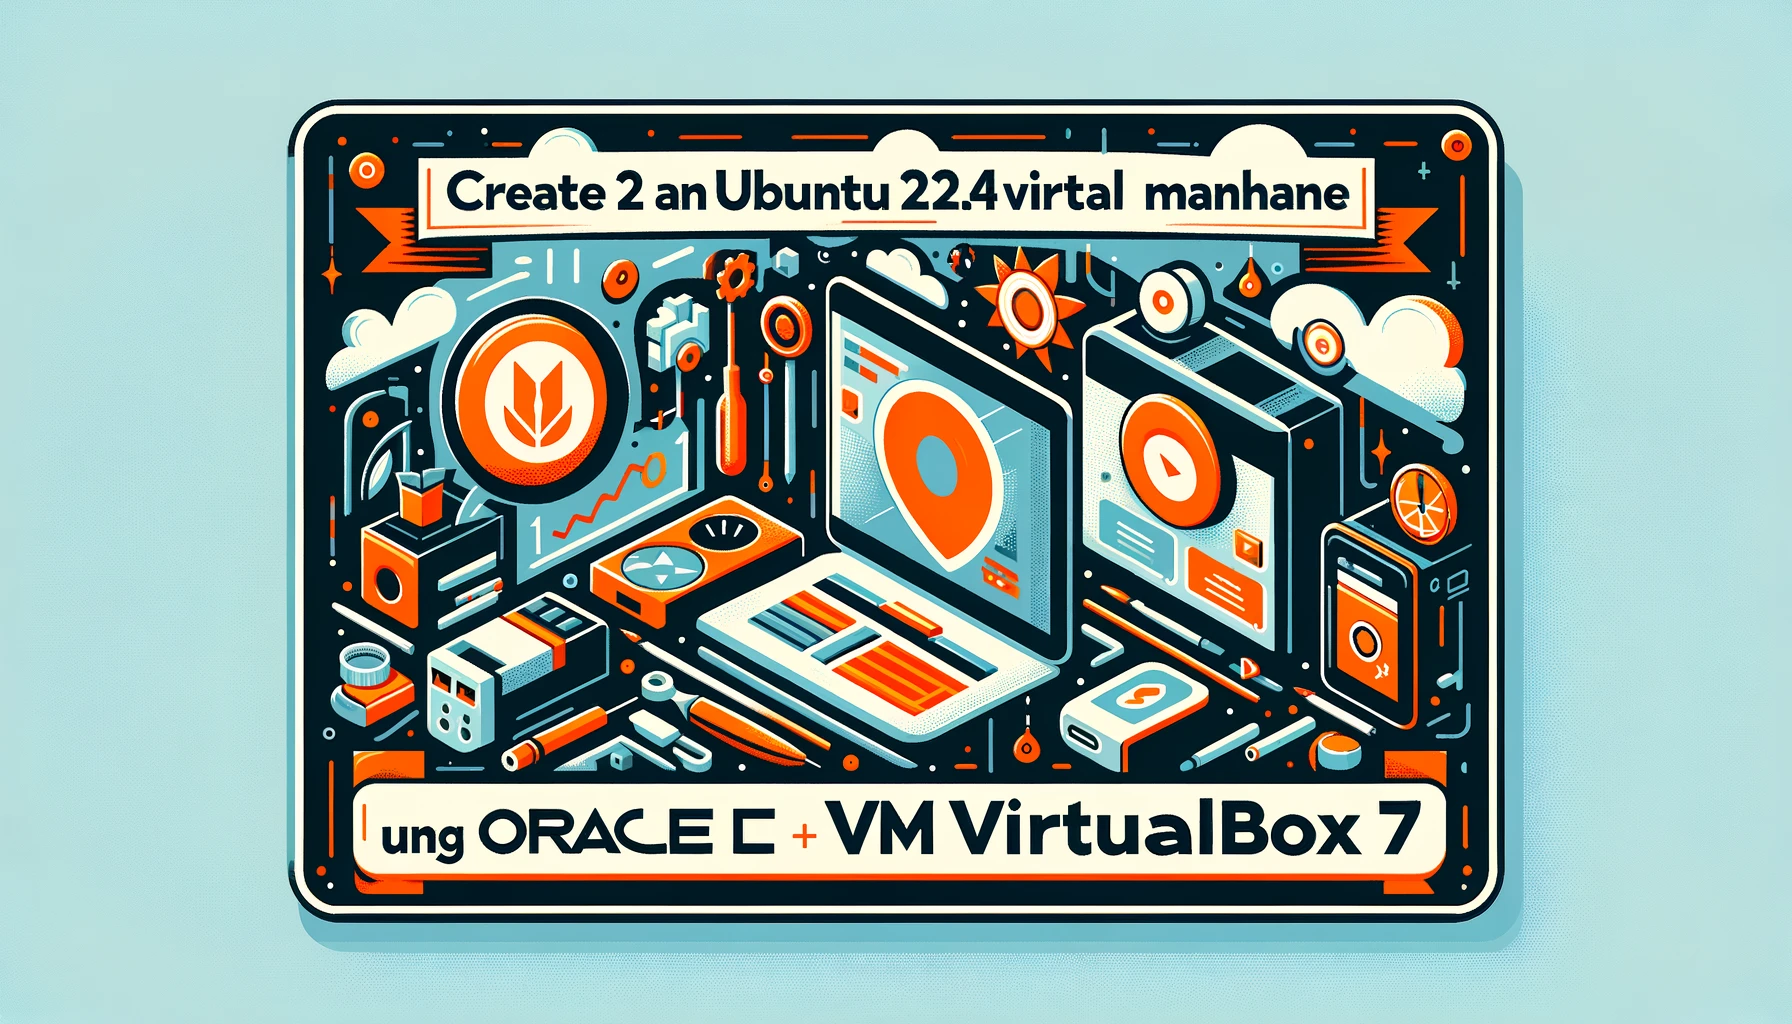 Bài 1 - Tạo máy ảo ubuntu 22.04 bằng Oracle VM VirtualBox 7